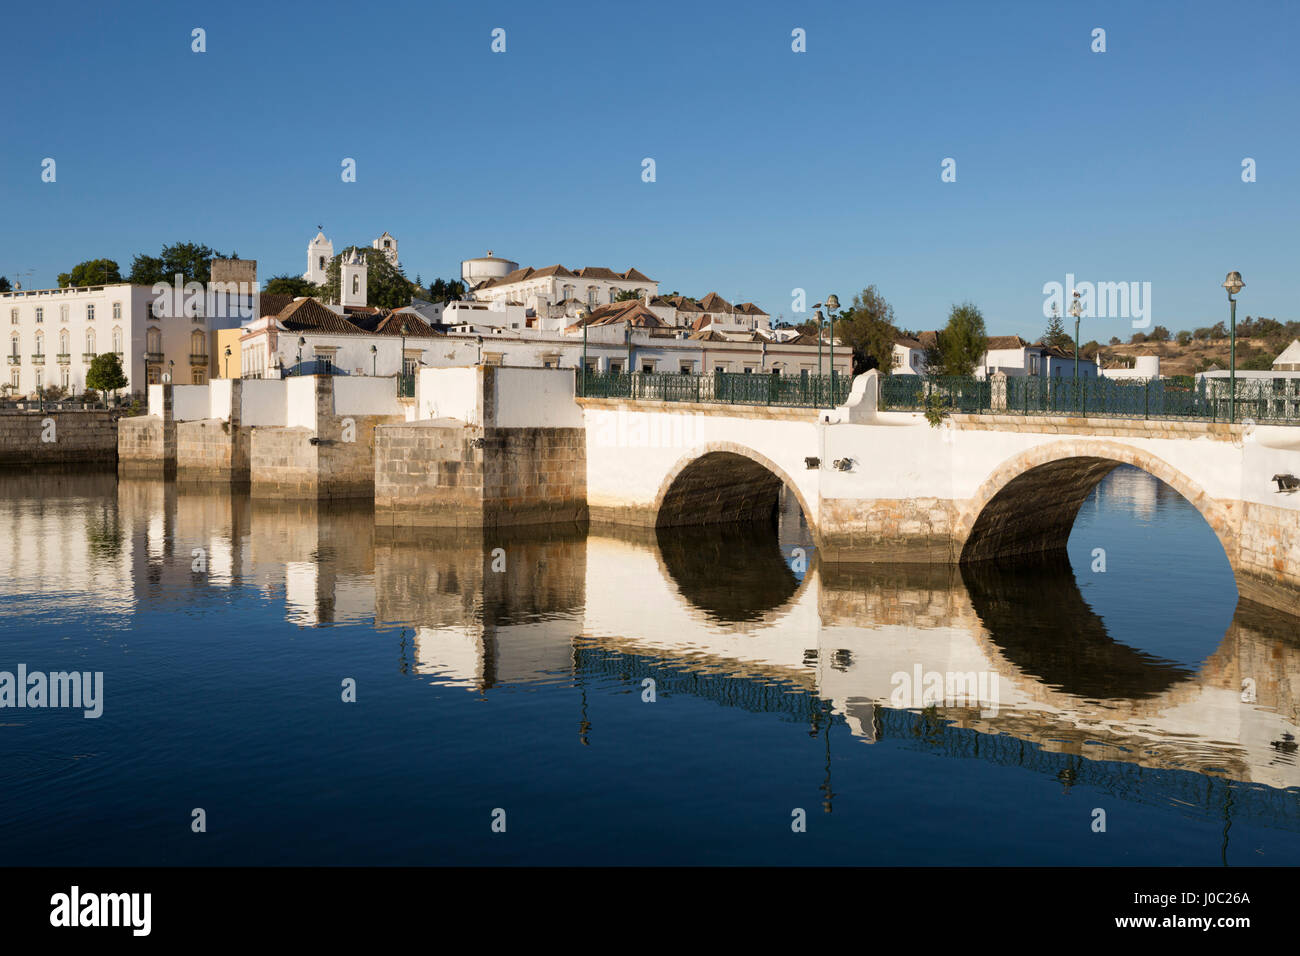 Seven arched Roman bridge and town on the Rio Gilao river, Tavira, Algarve, Portugal Stock Photo